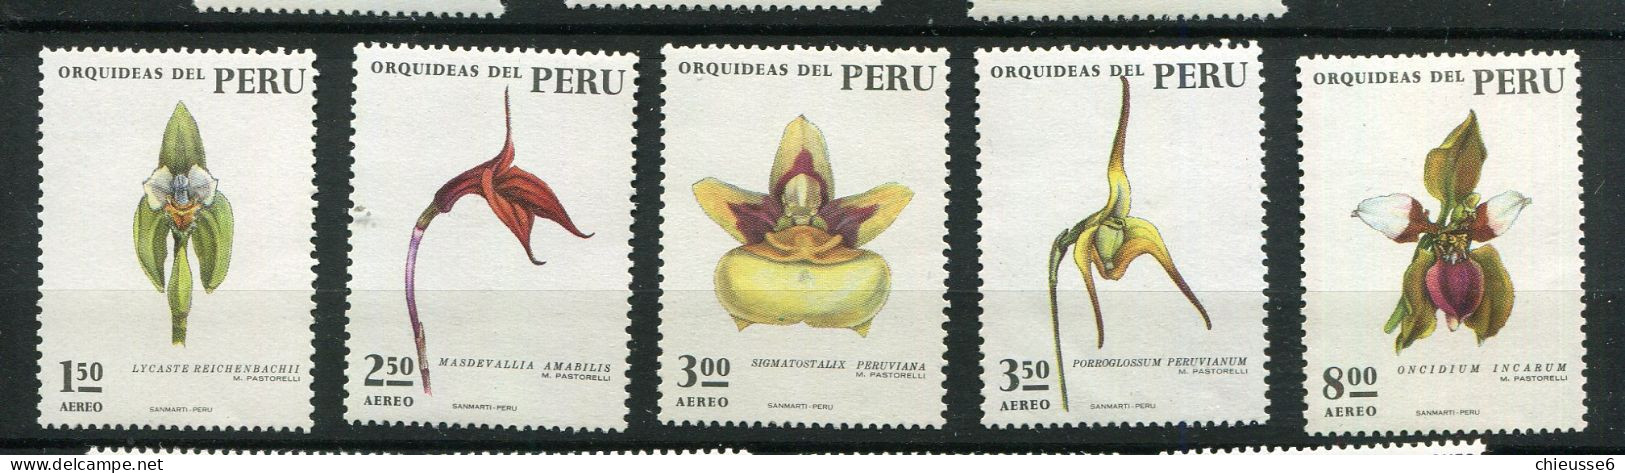 Perou ** - N° 356 à 360 - Orchidées - Peru